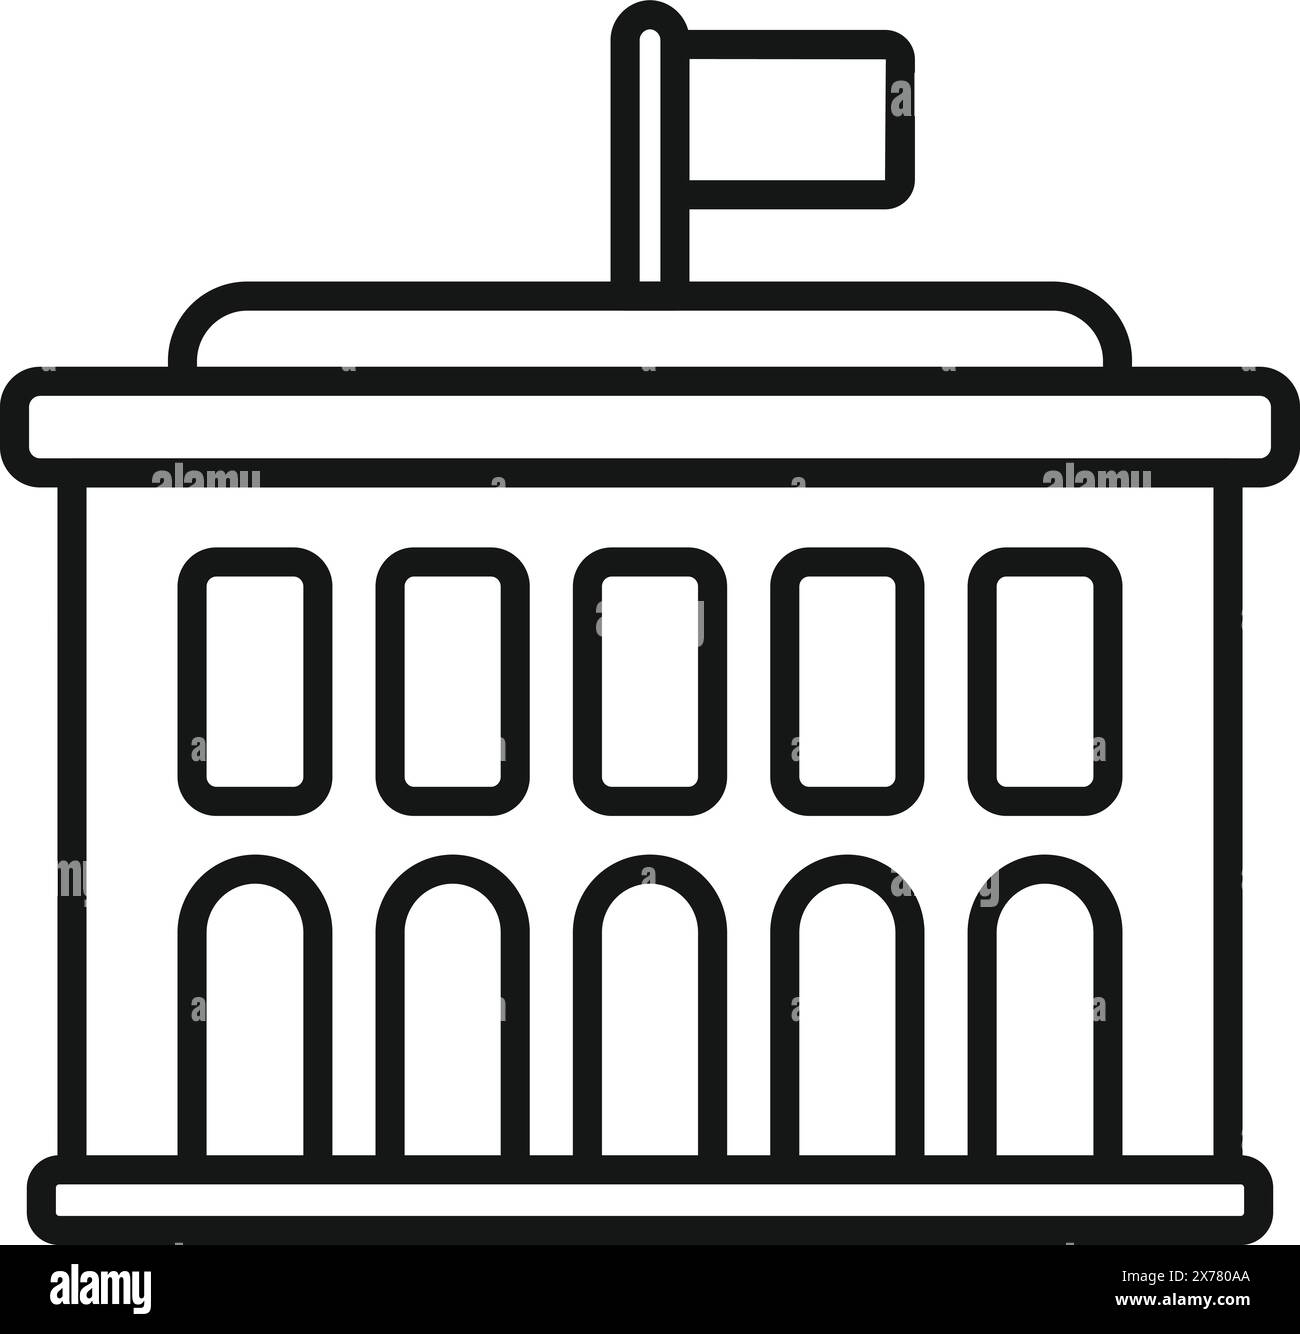 Dessin de contour noir et blanc d'une institution gouvernementale classique avec un drapeau sur le dessus Illustration de Vecteur